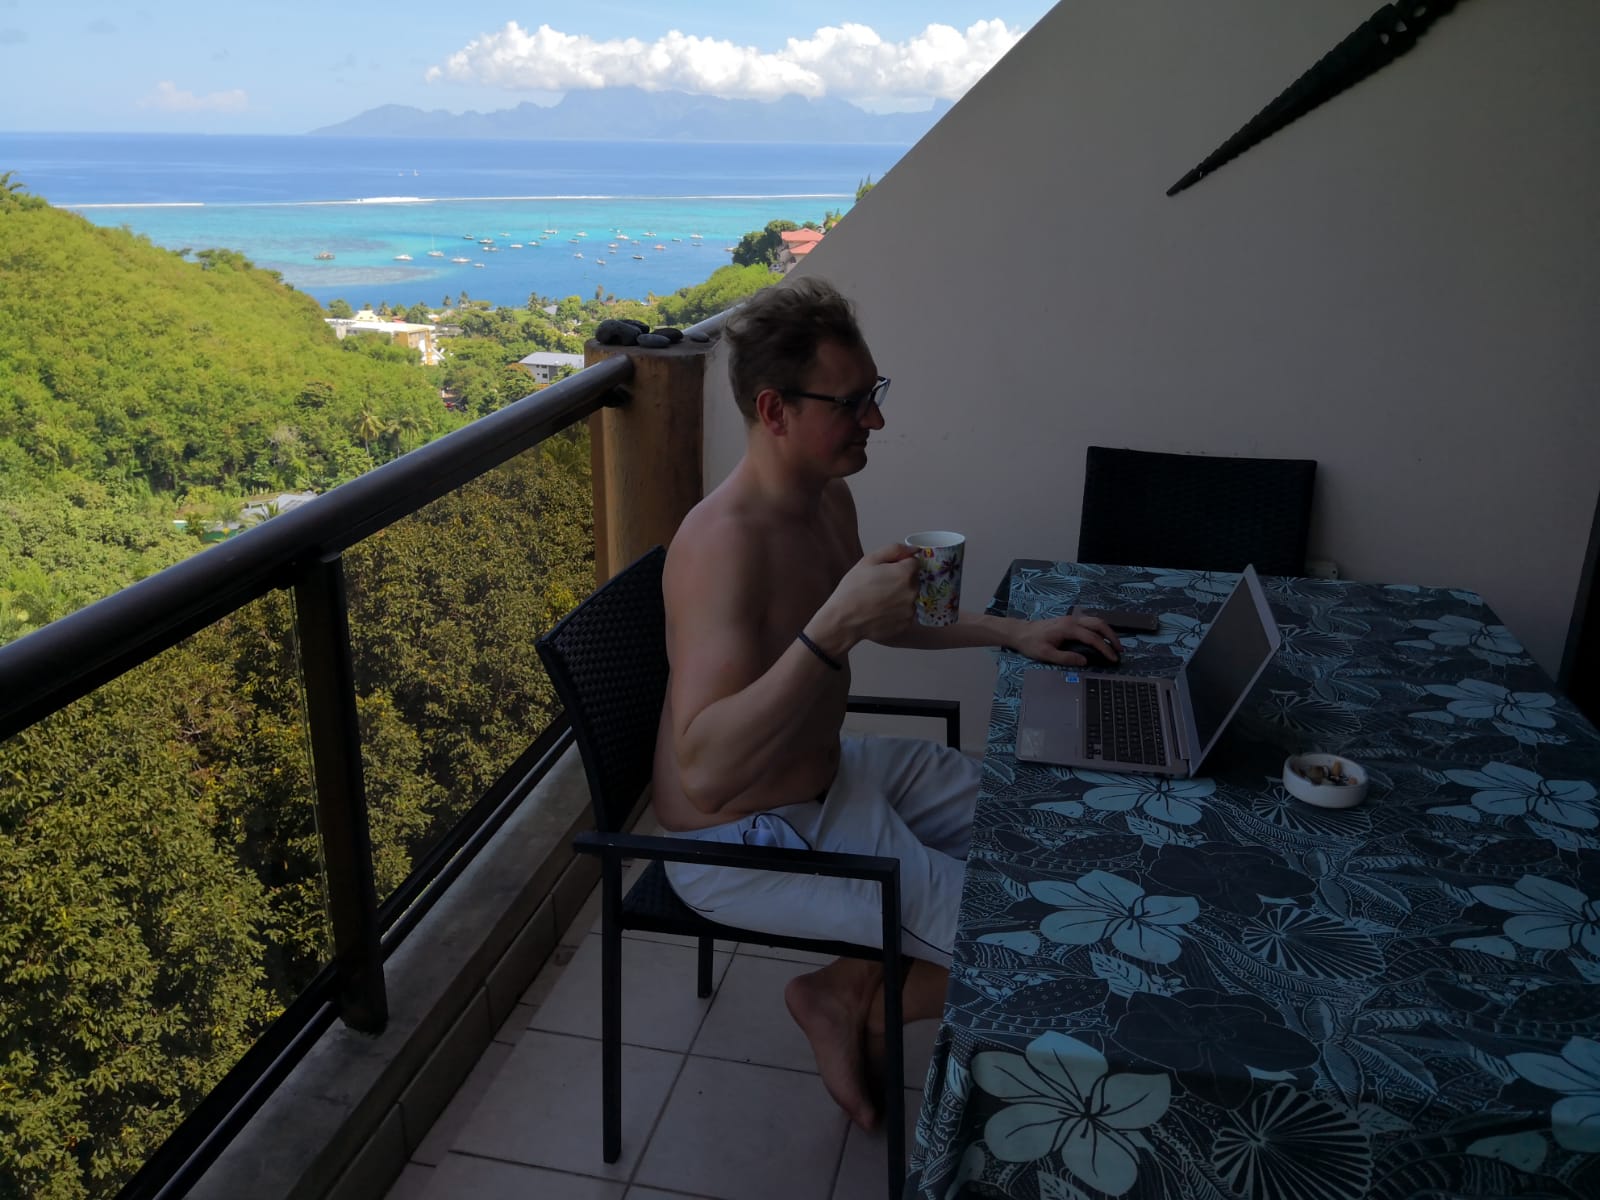 수영과 해변 휴식 : 디지털 유목민으로서 내가 일한 최고의 장소는 ... Tahiti입니다! : 수영과 해변 휴식 : 디지털 유목민으로서 내가 일한 최고의 장소는 ... Tahiti입니다!